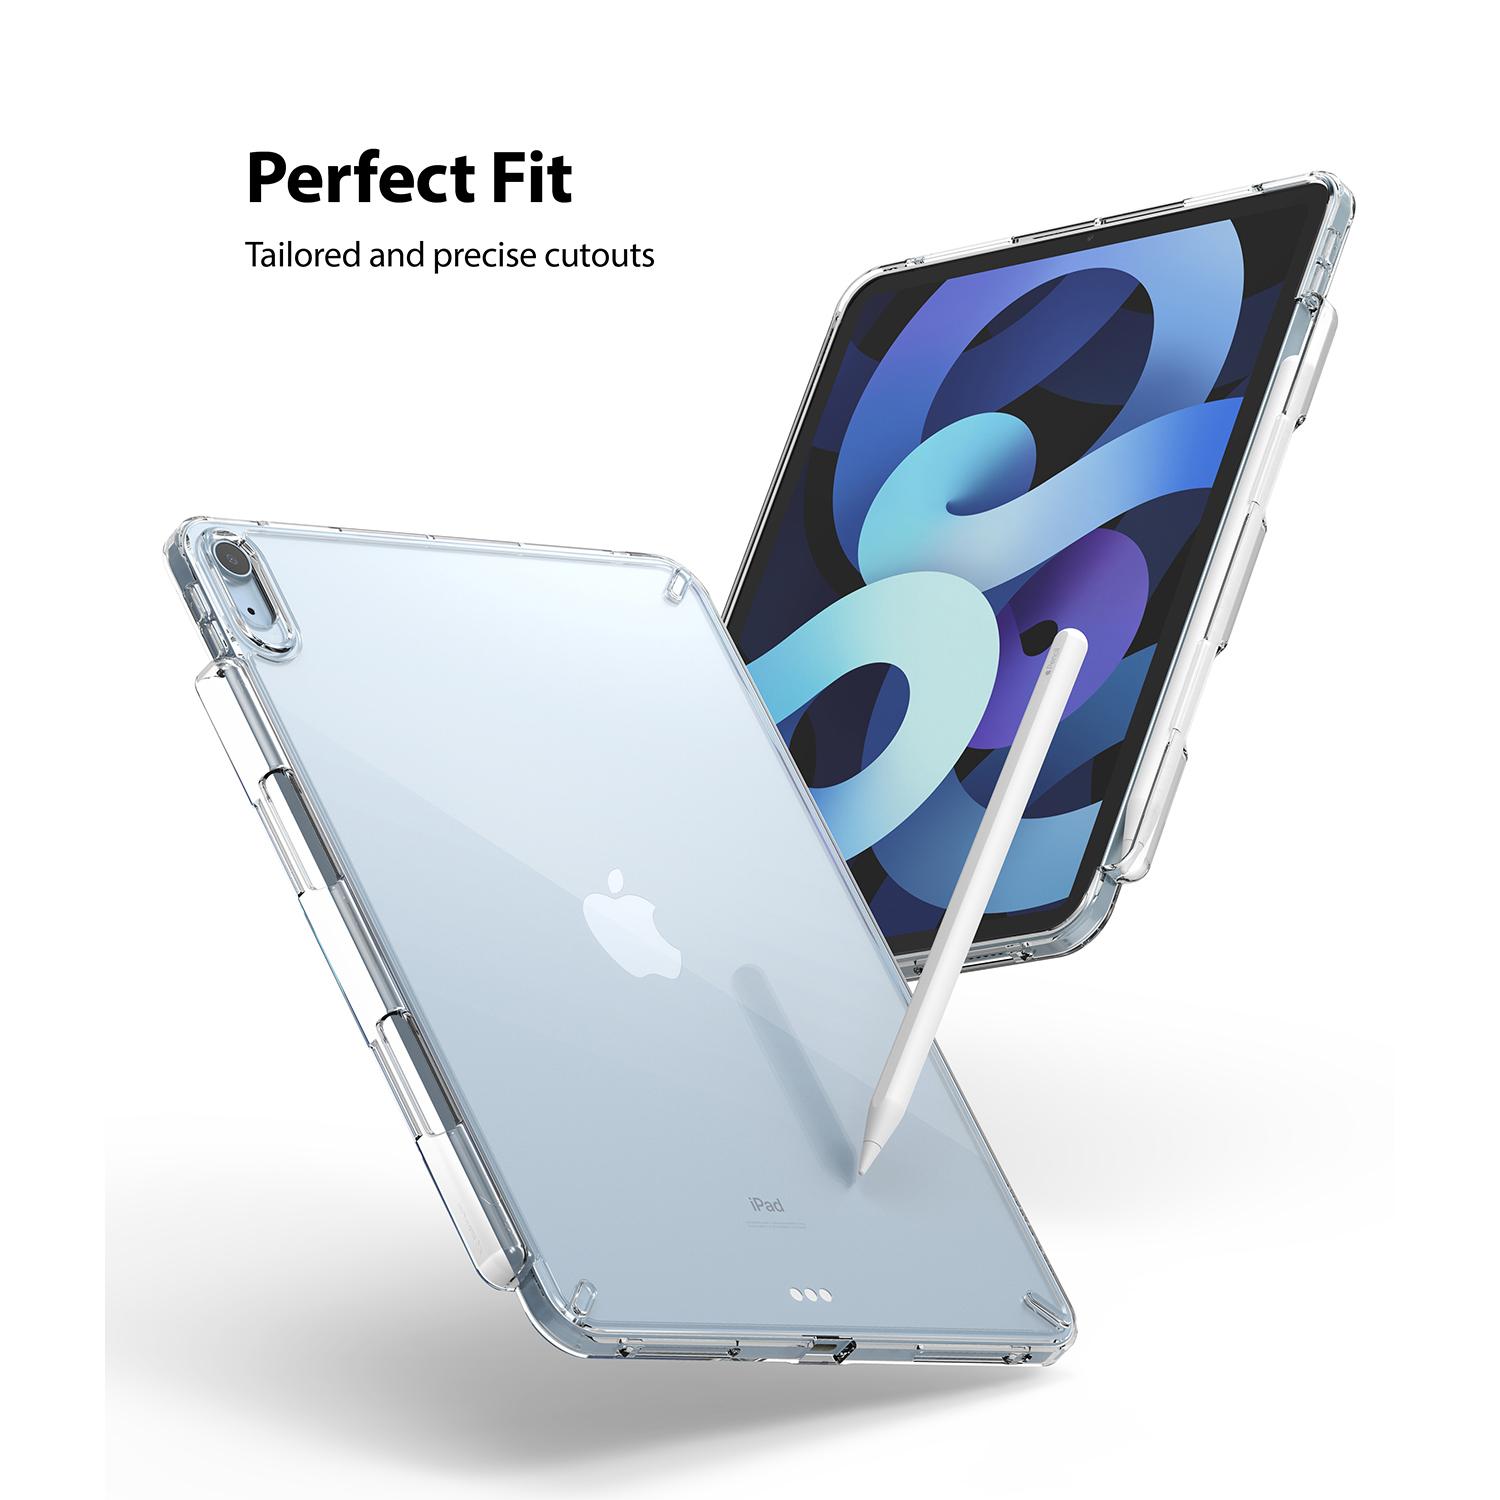 Fusion Case iPad Air 10.9 4th Gen (2020) Clear